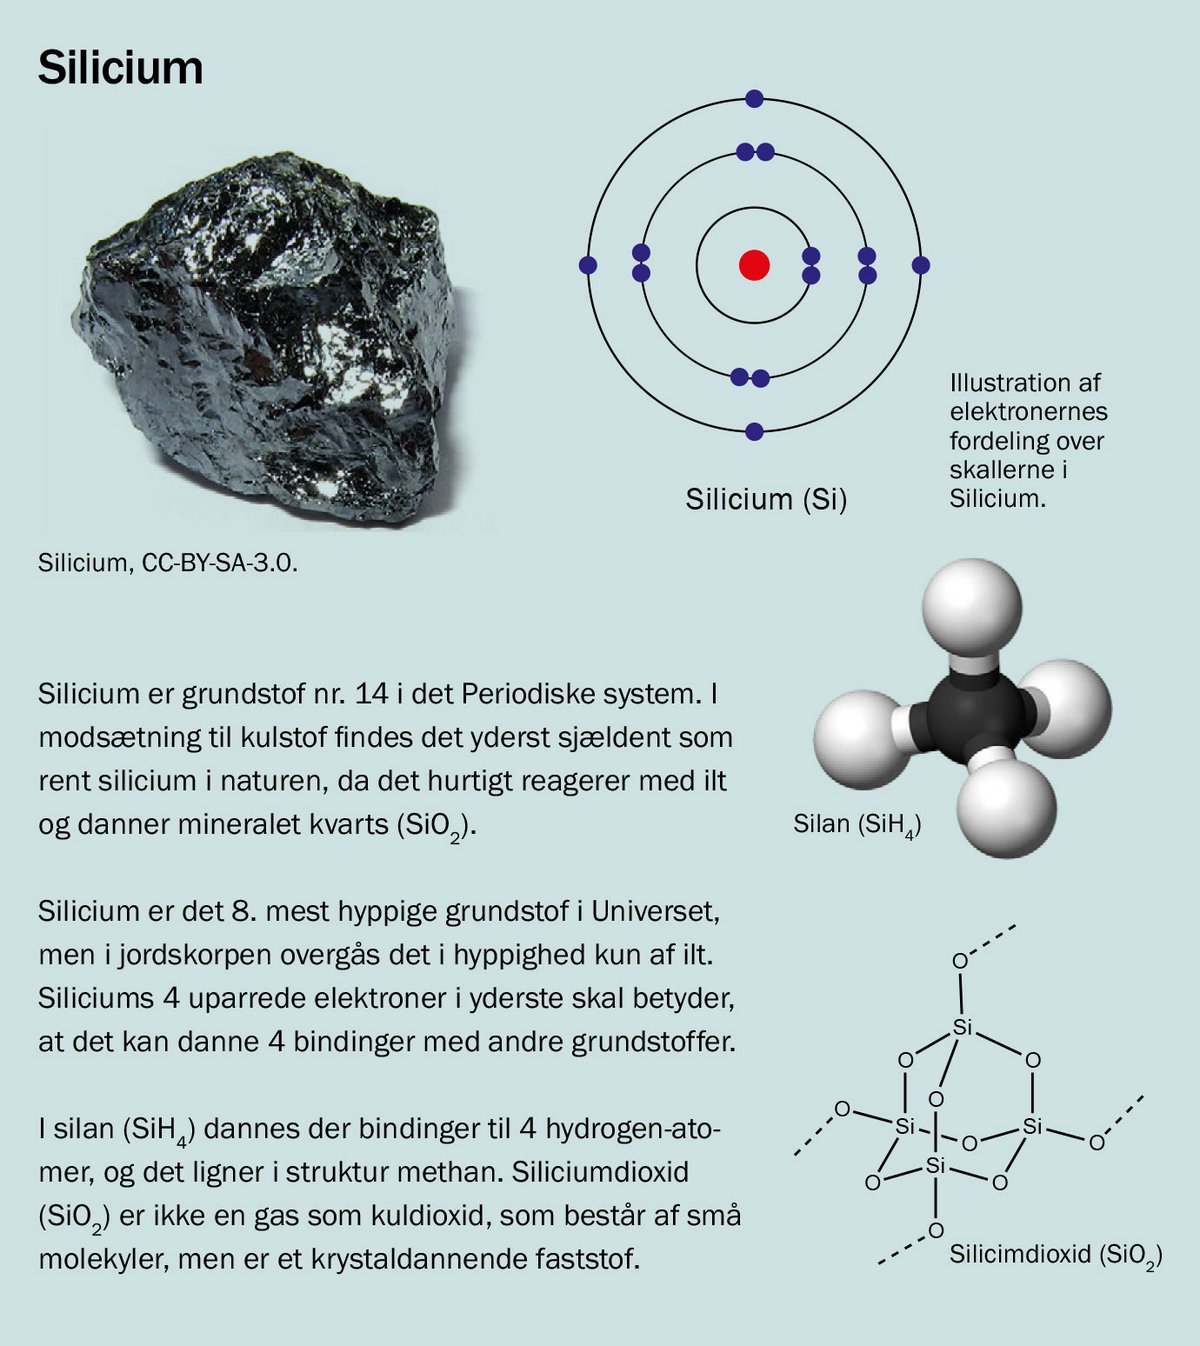 Faktaboks om silicium. Silicium er grundstof nr. 14 i det Periodiske system. I modsætning til kulstof findes det yderst sjældent som rent silicium i naturen, da det hurtigt reagerer med ilt og danner mineralet kvarts (SiO2). Silicium er det 8. mest hyppige grundstof i Universet, men i jordskorpen overgås det i hyppighed kun af ilt. Siliciums 4 uparrede elektroner i yderste skal betyder, at det kan danne 4 bindinger med andre grundstoffer. I silan (SiH4) dannes der bindinger til 4 hydrogen-atomer, og det ligner i struktur methan. Siliciumdioxid (SiO2) er ikke en gas som kuldioxid, som består af små molekyler, men er et krystaldannende faststof.